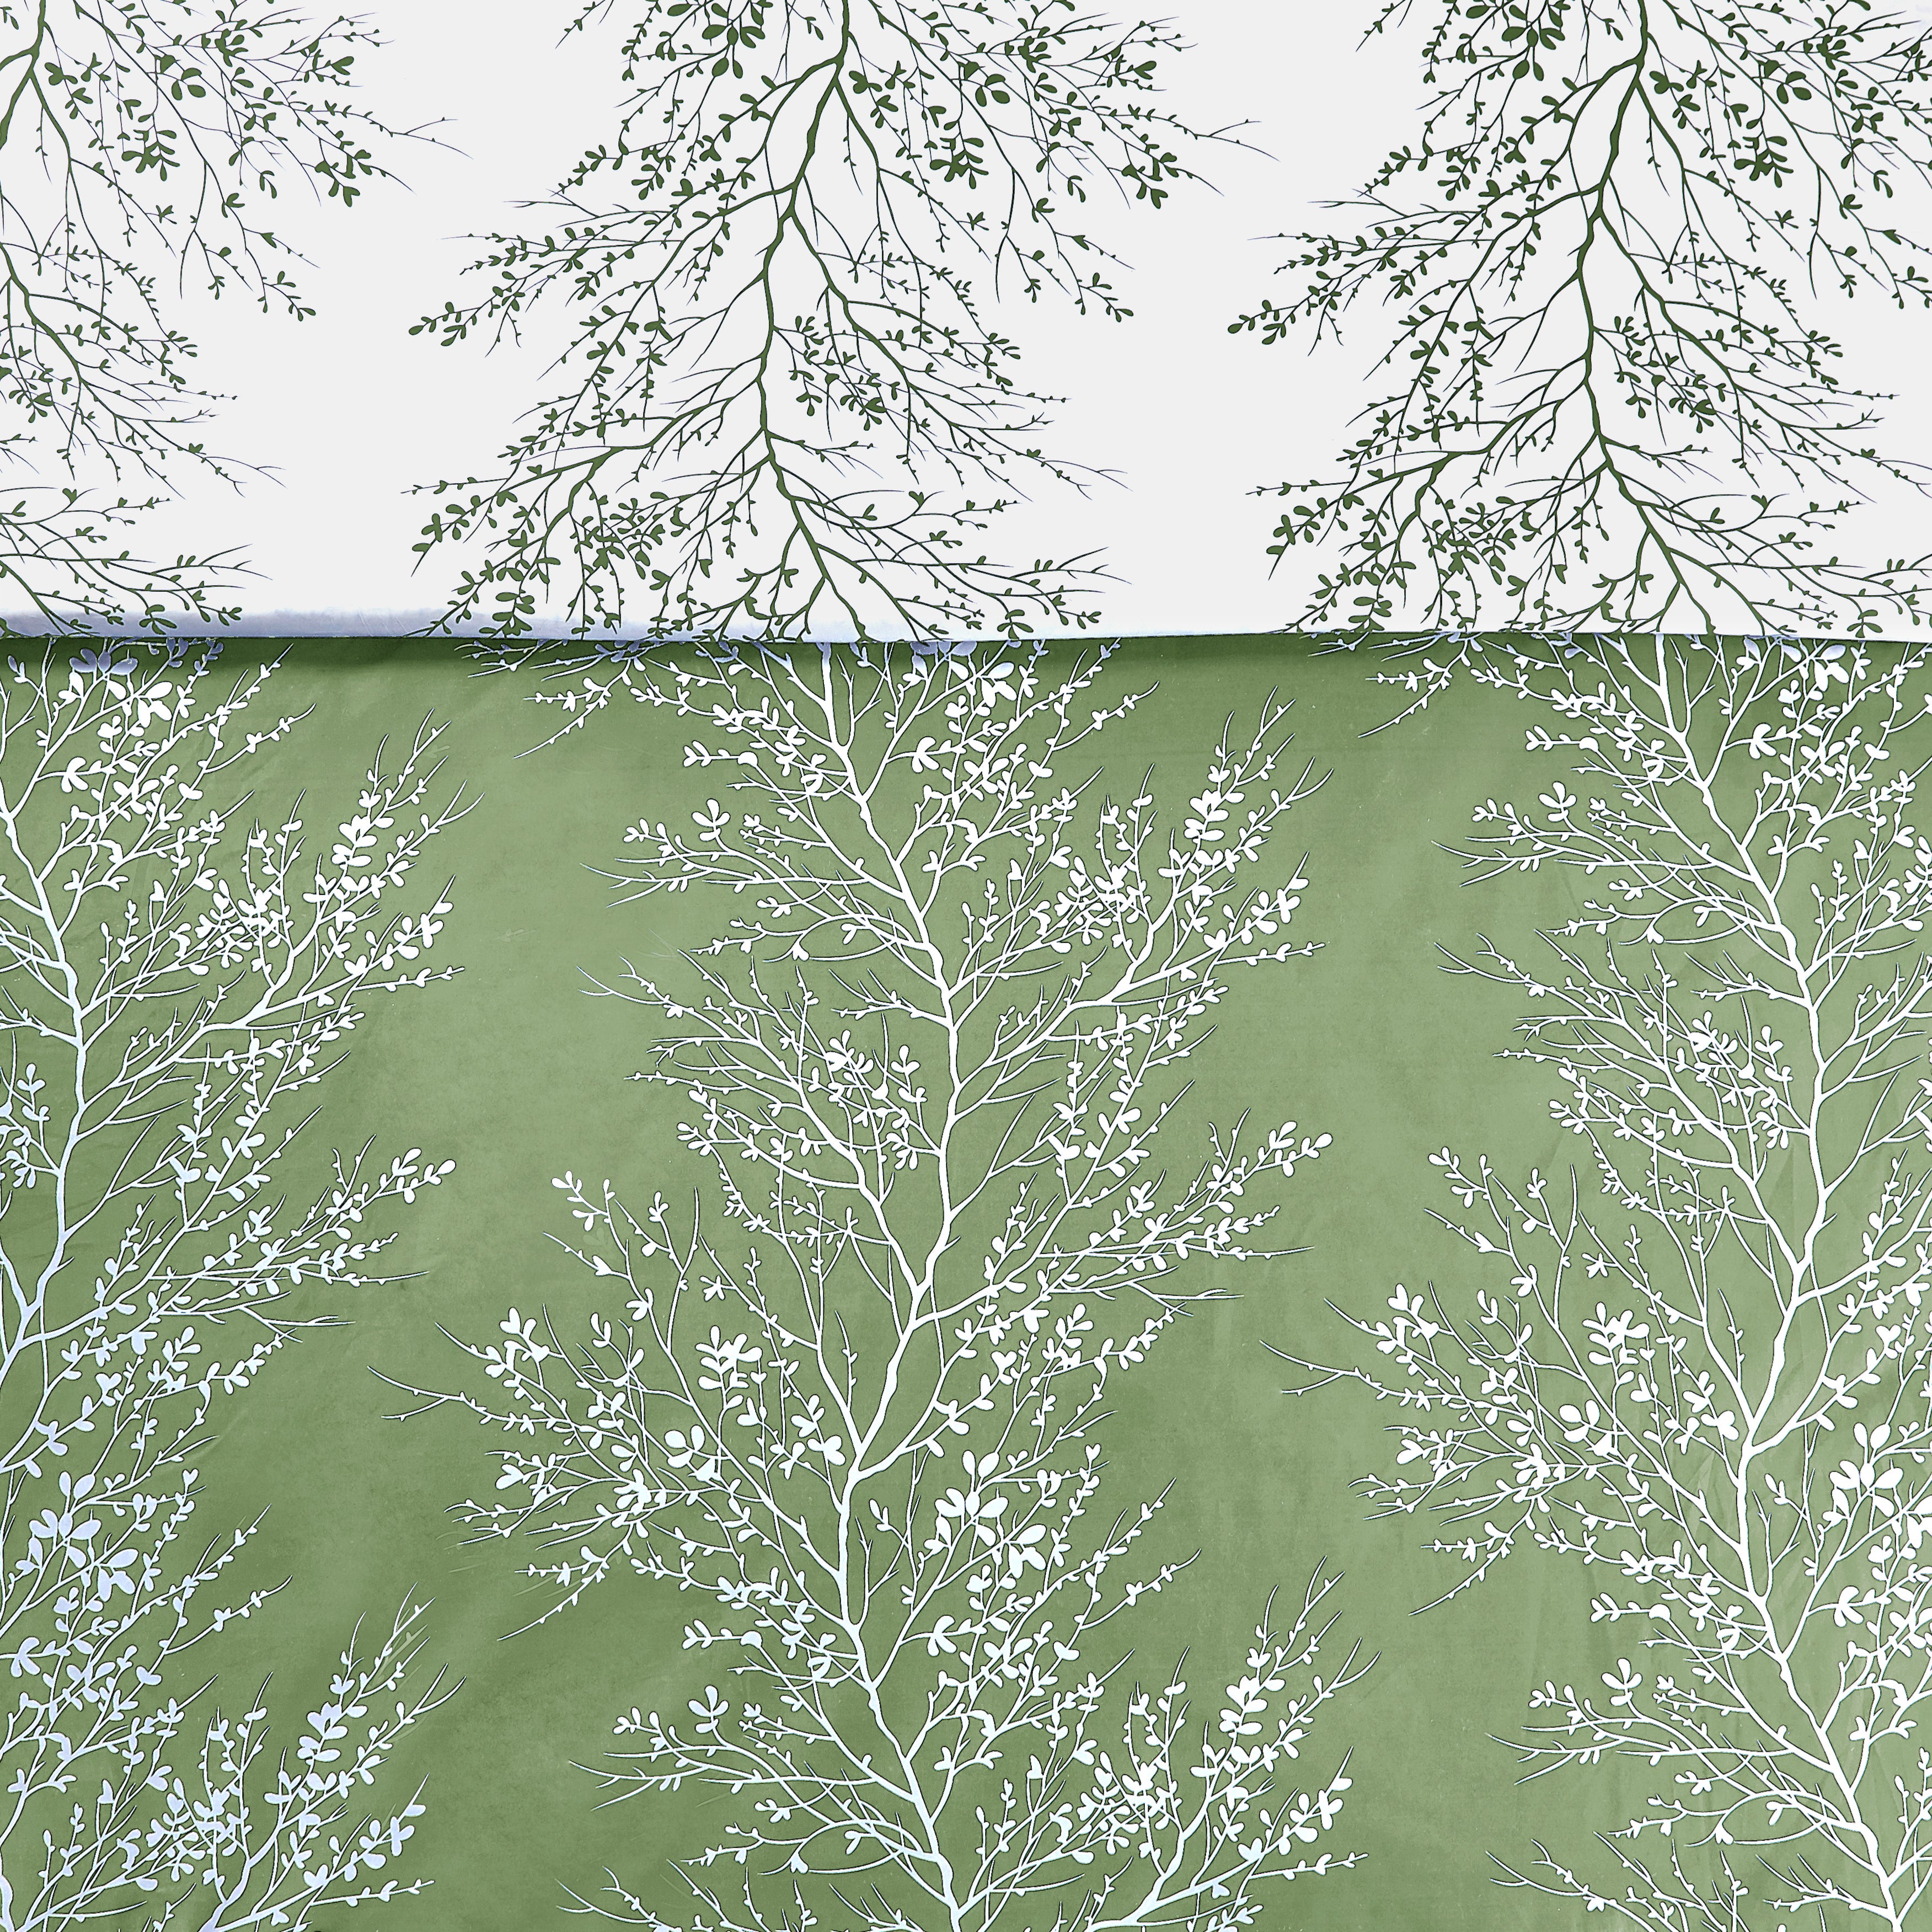 Foliage Reversible Comforter Set + Two Free Sham Pillows - Spirit Linen - Sage